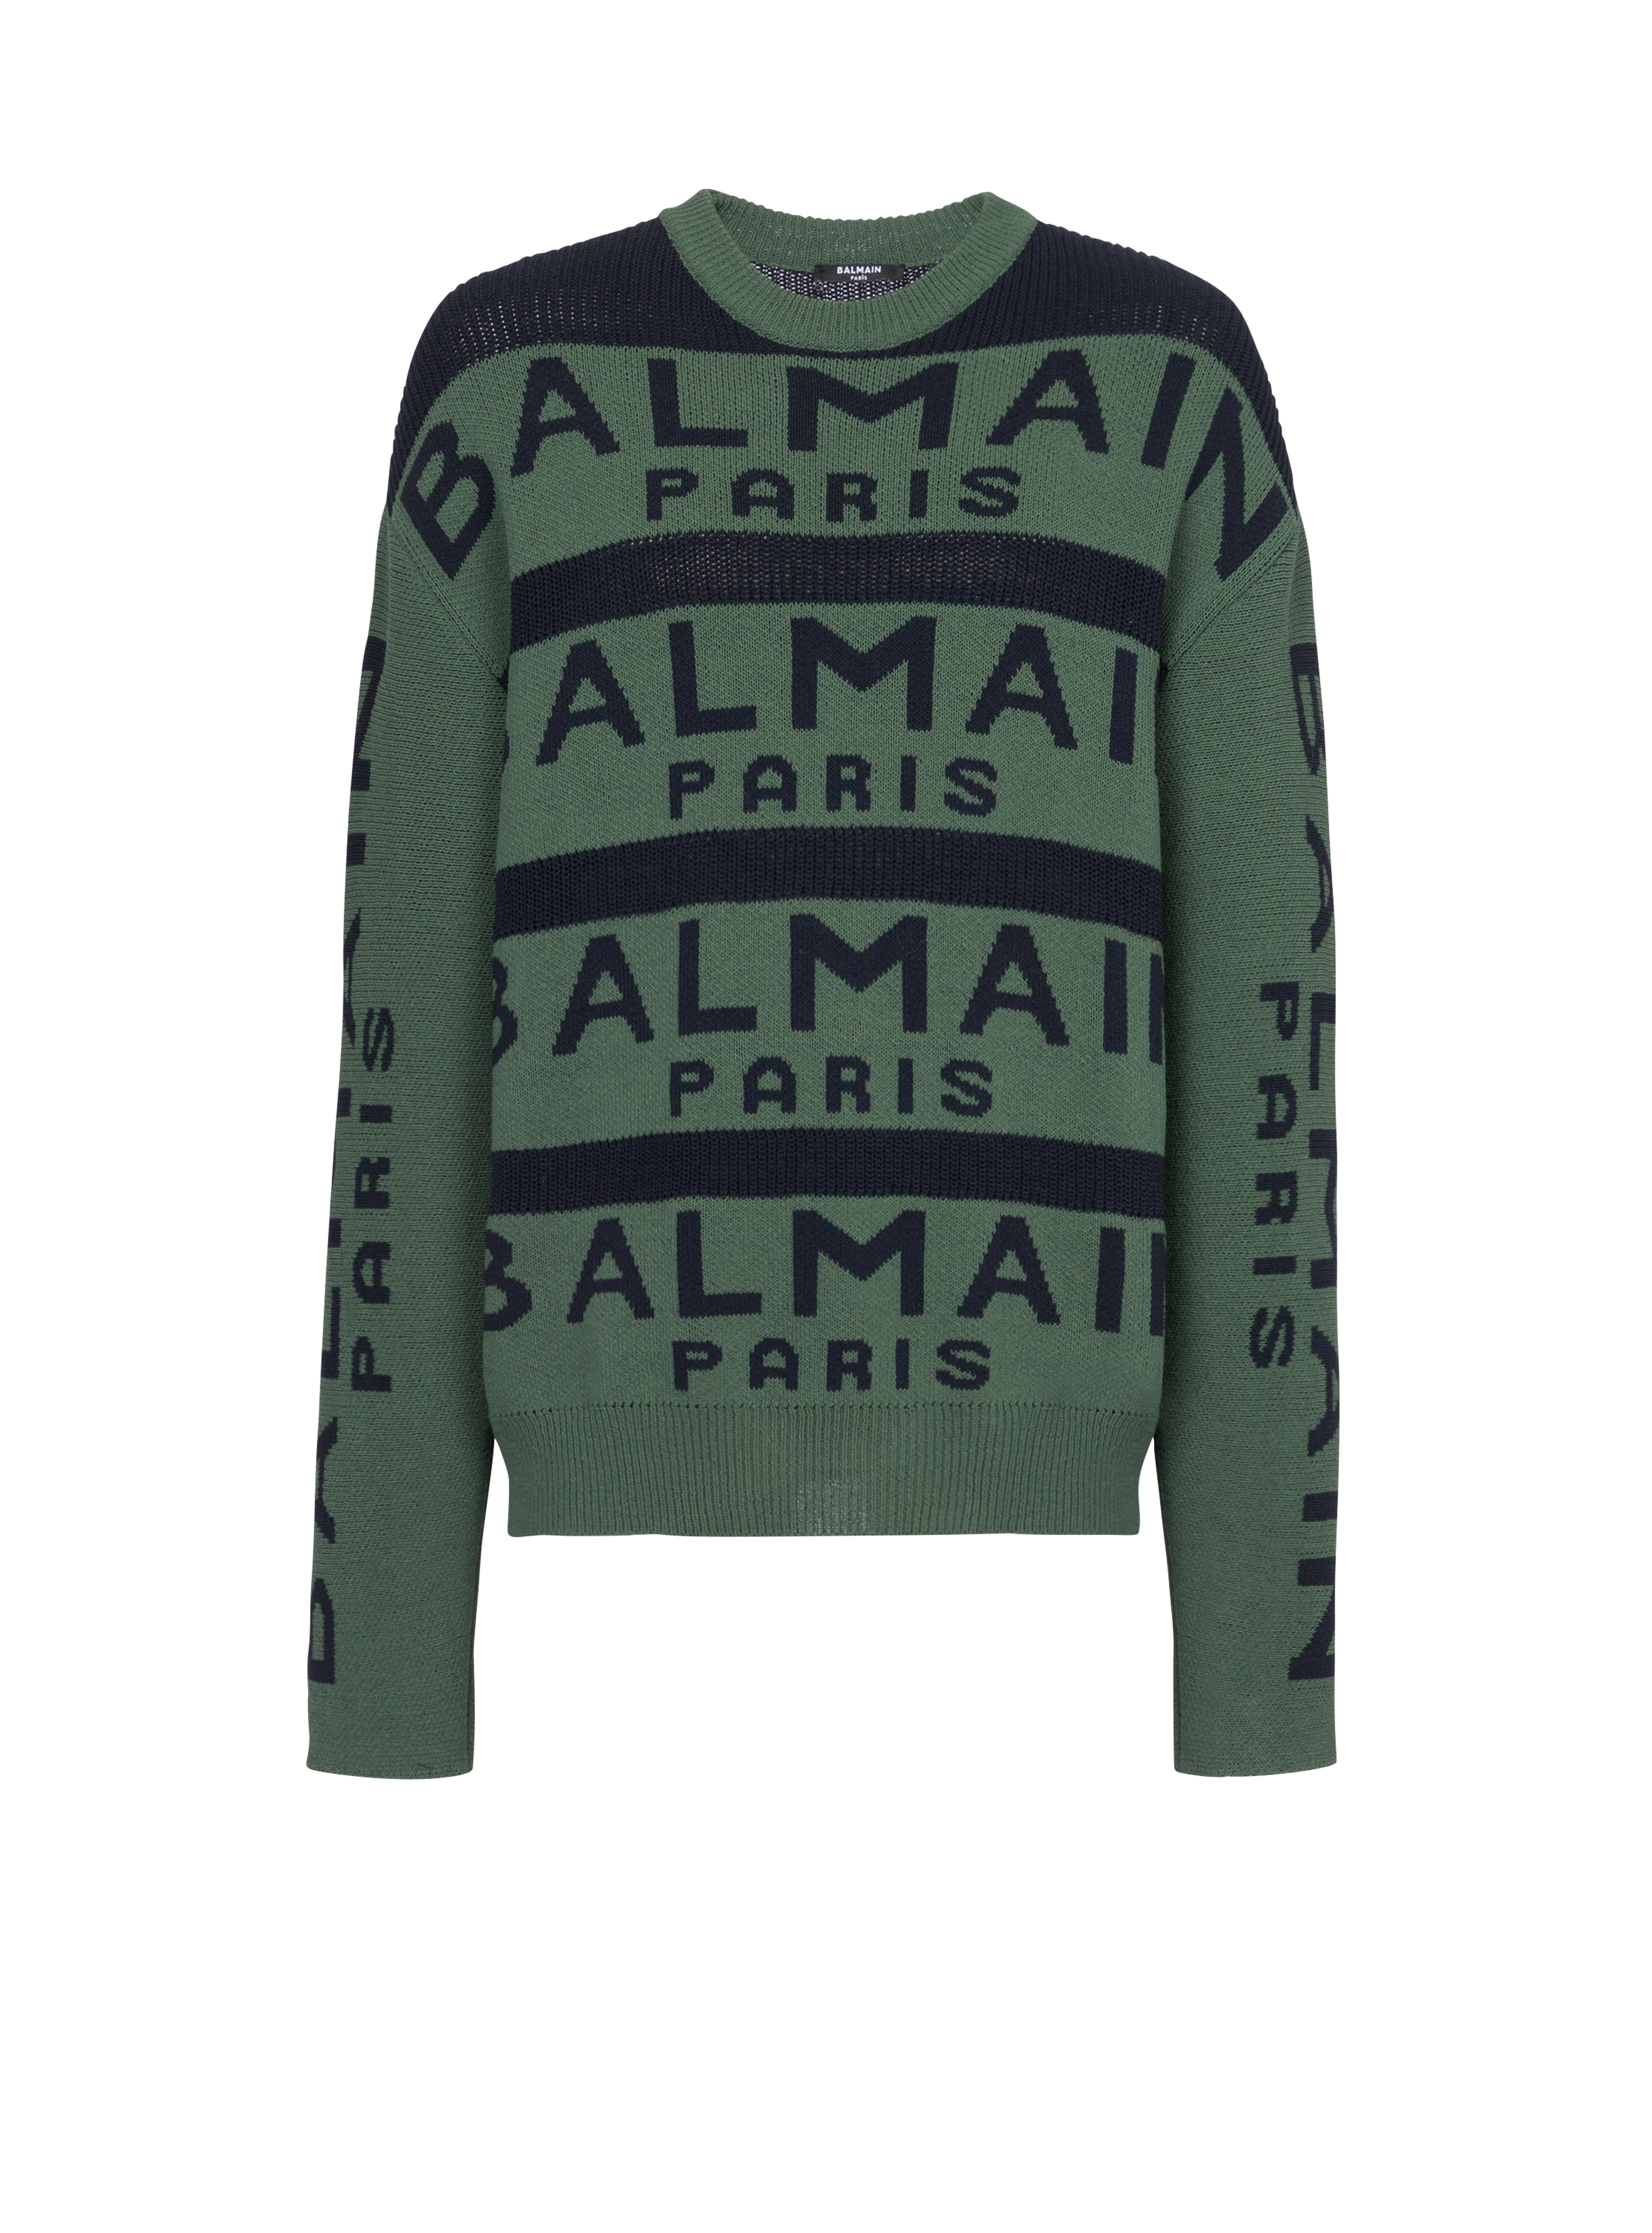 Pullover ricamato con logo Balmain Paris, verde